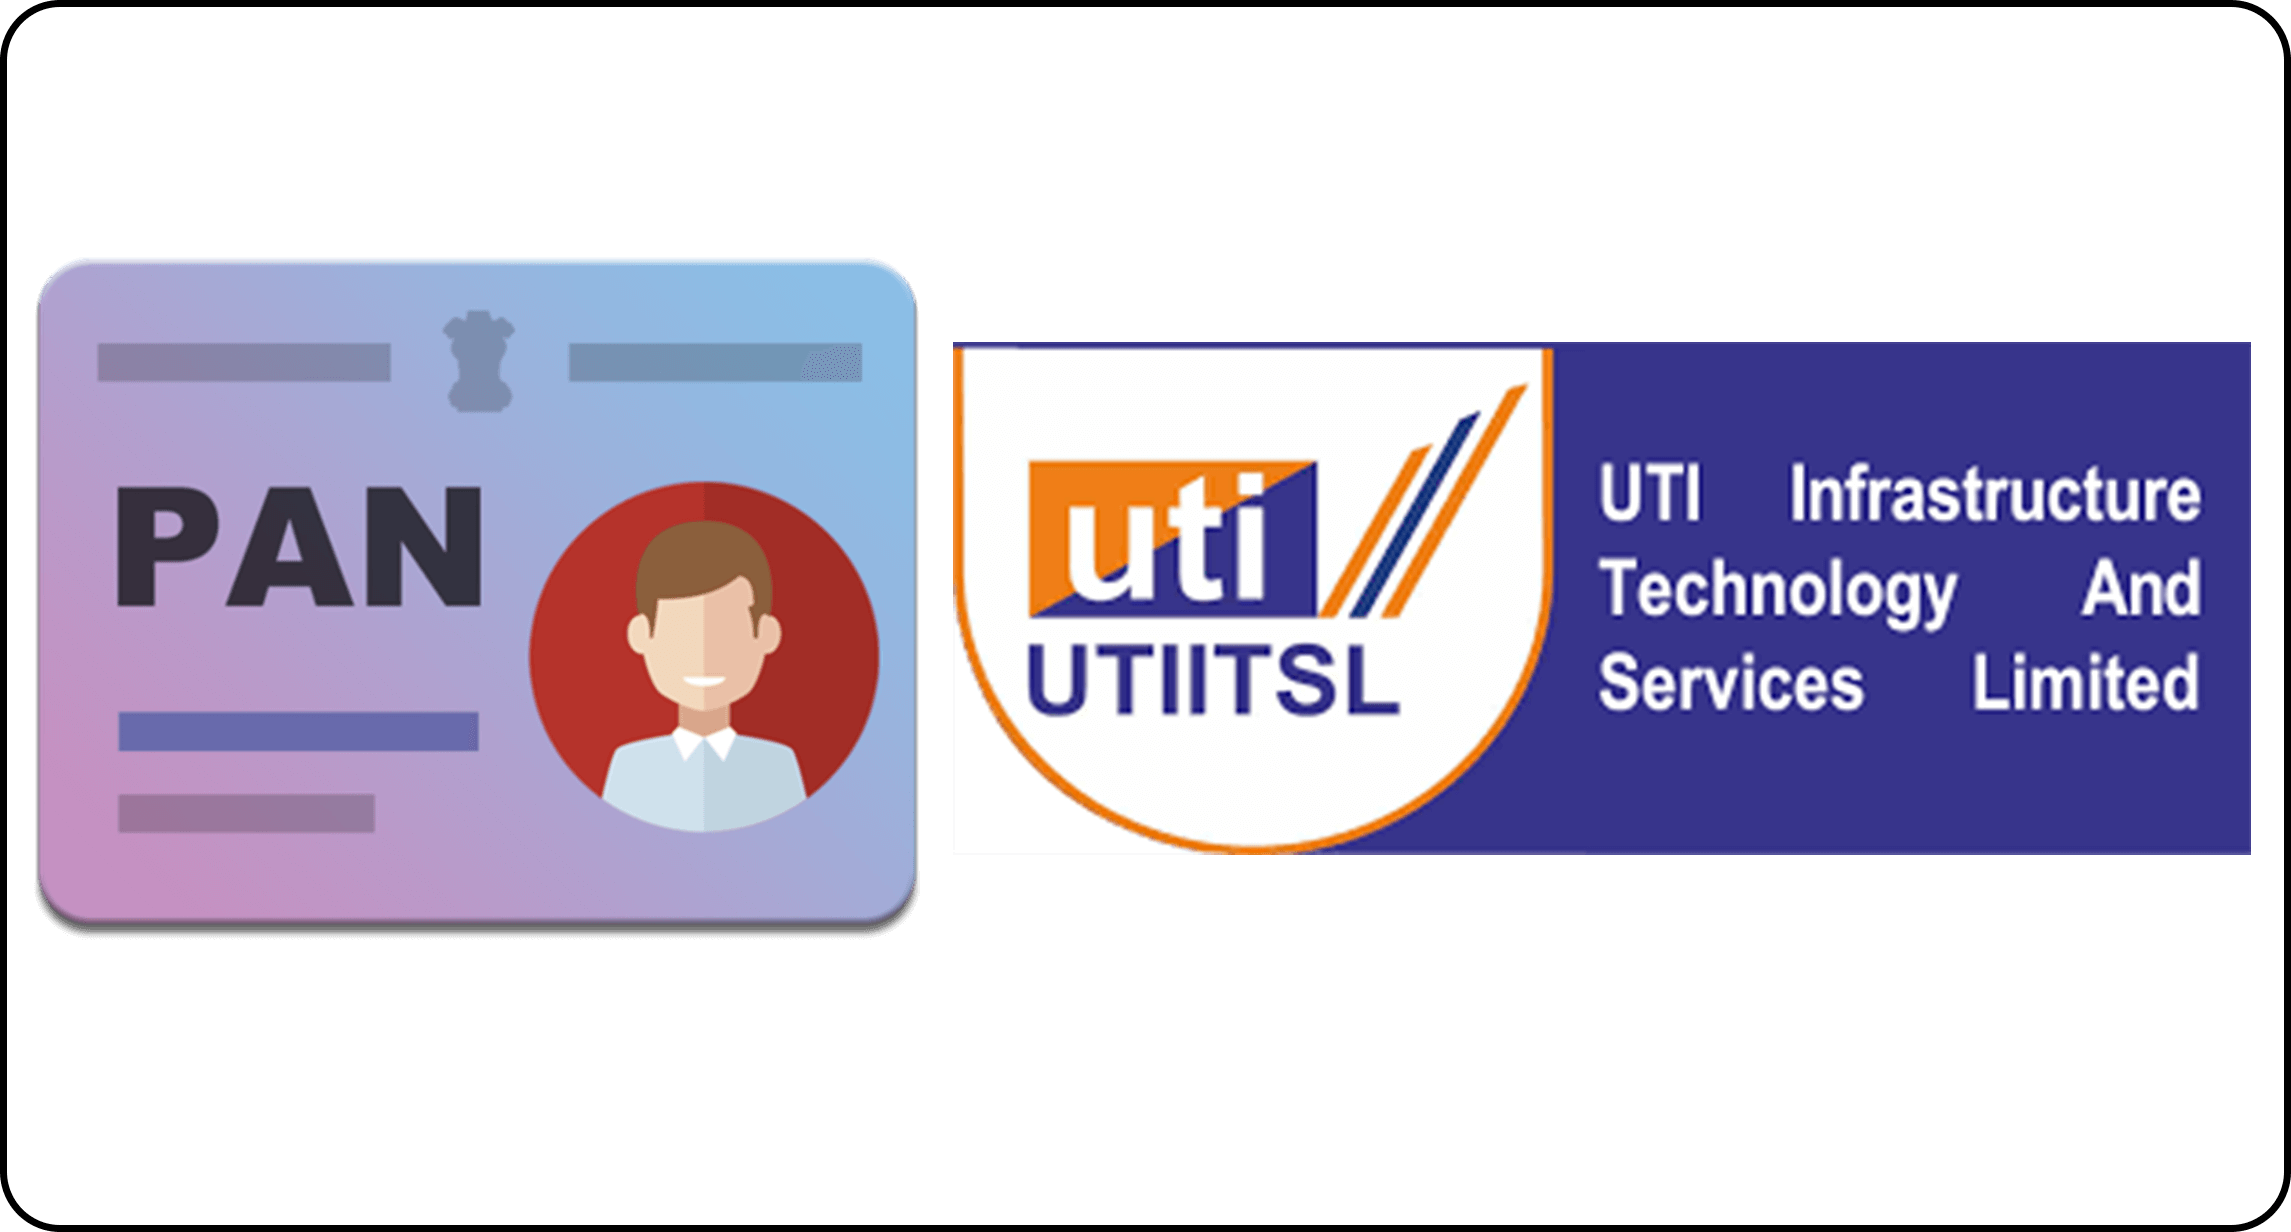 pan card and uti logo
